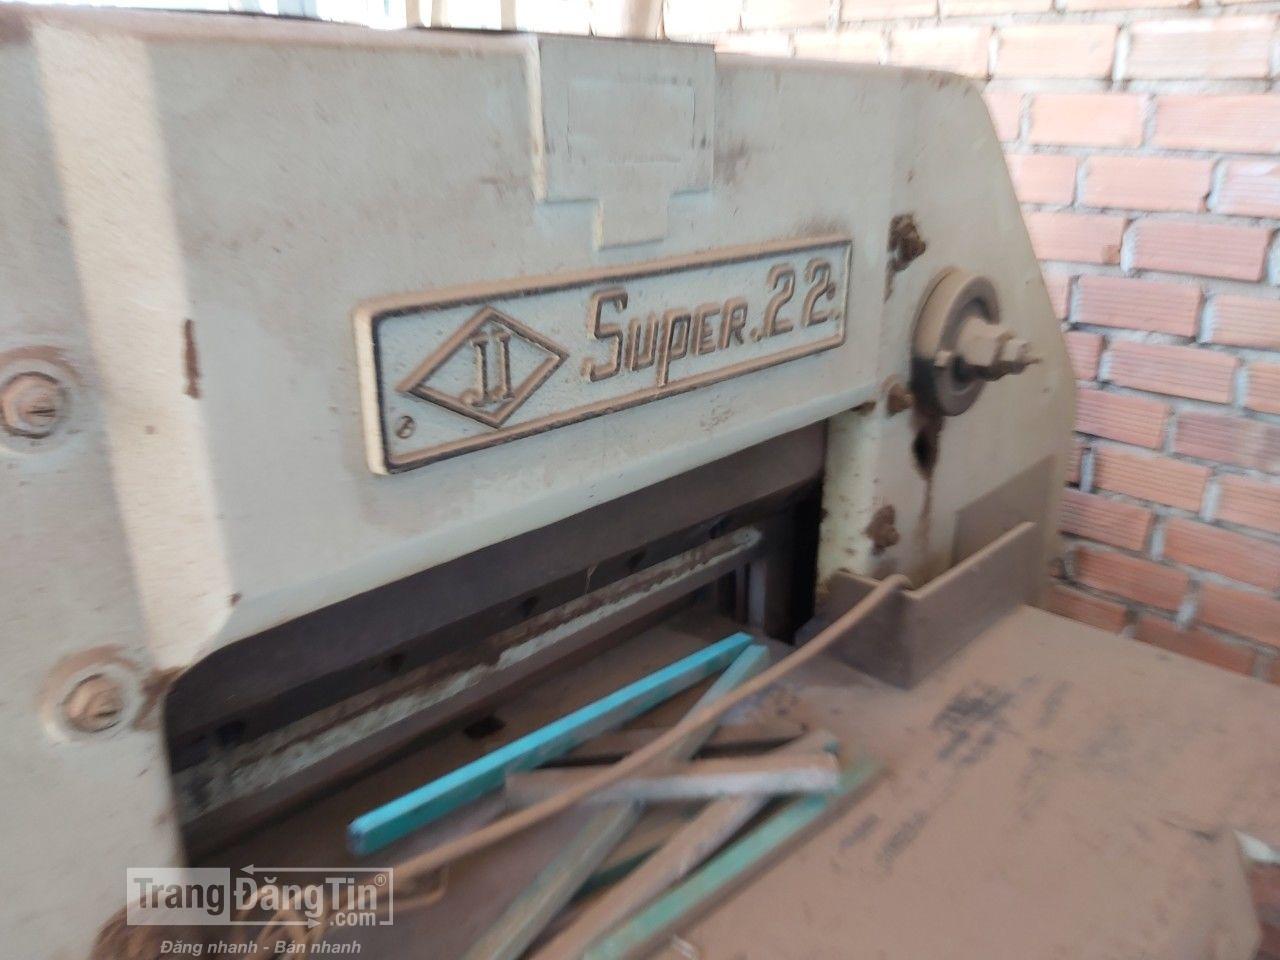 máy cắt xén giấy cỡ lớn bằng điện Super 22. (Nhật)